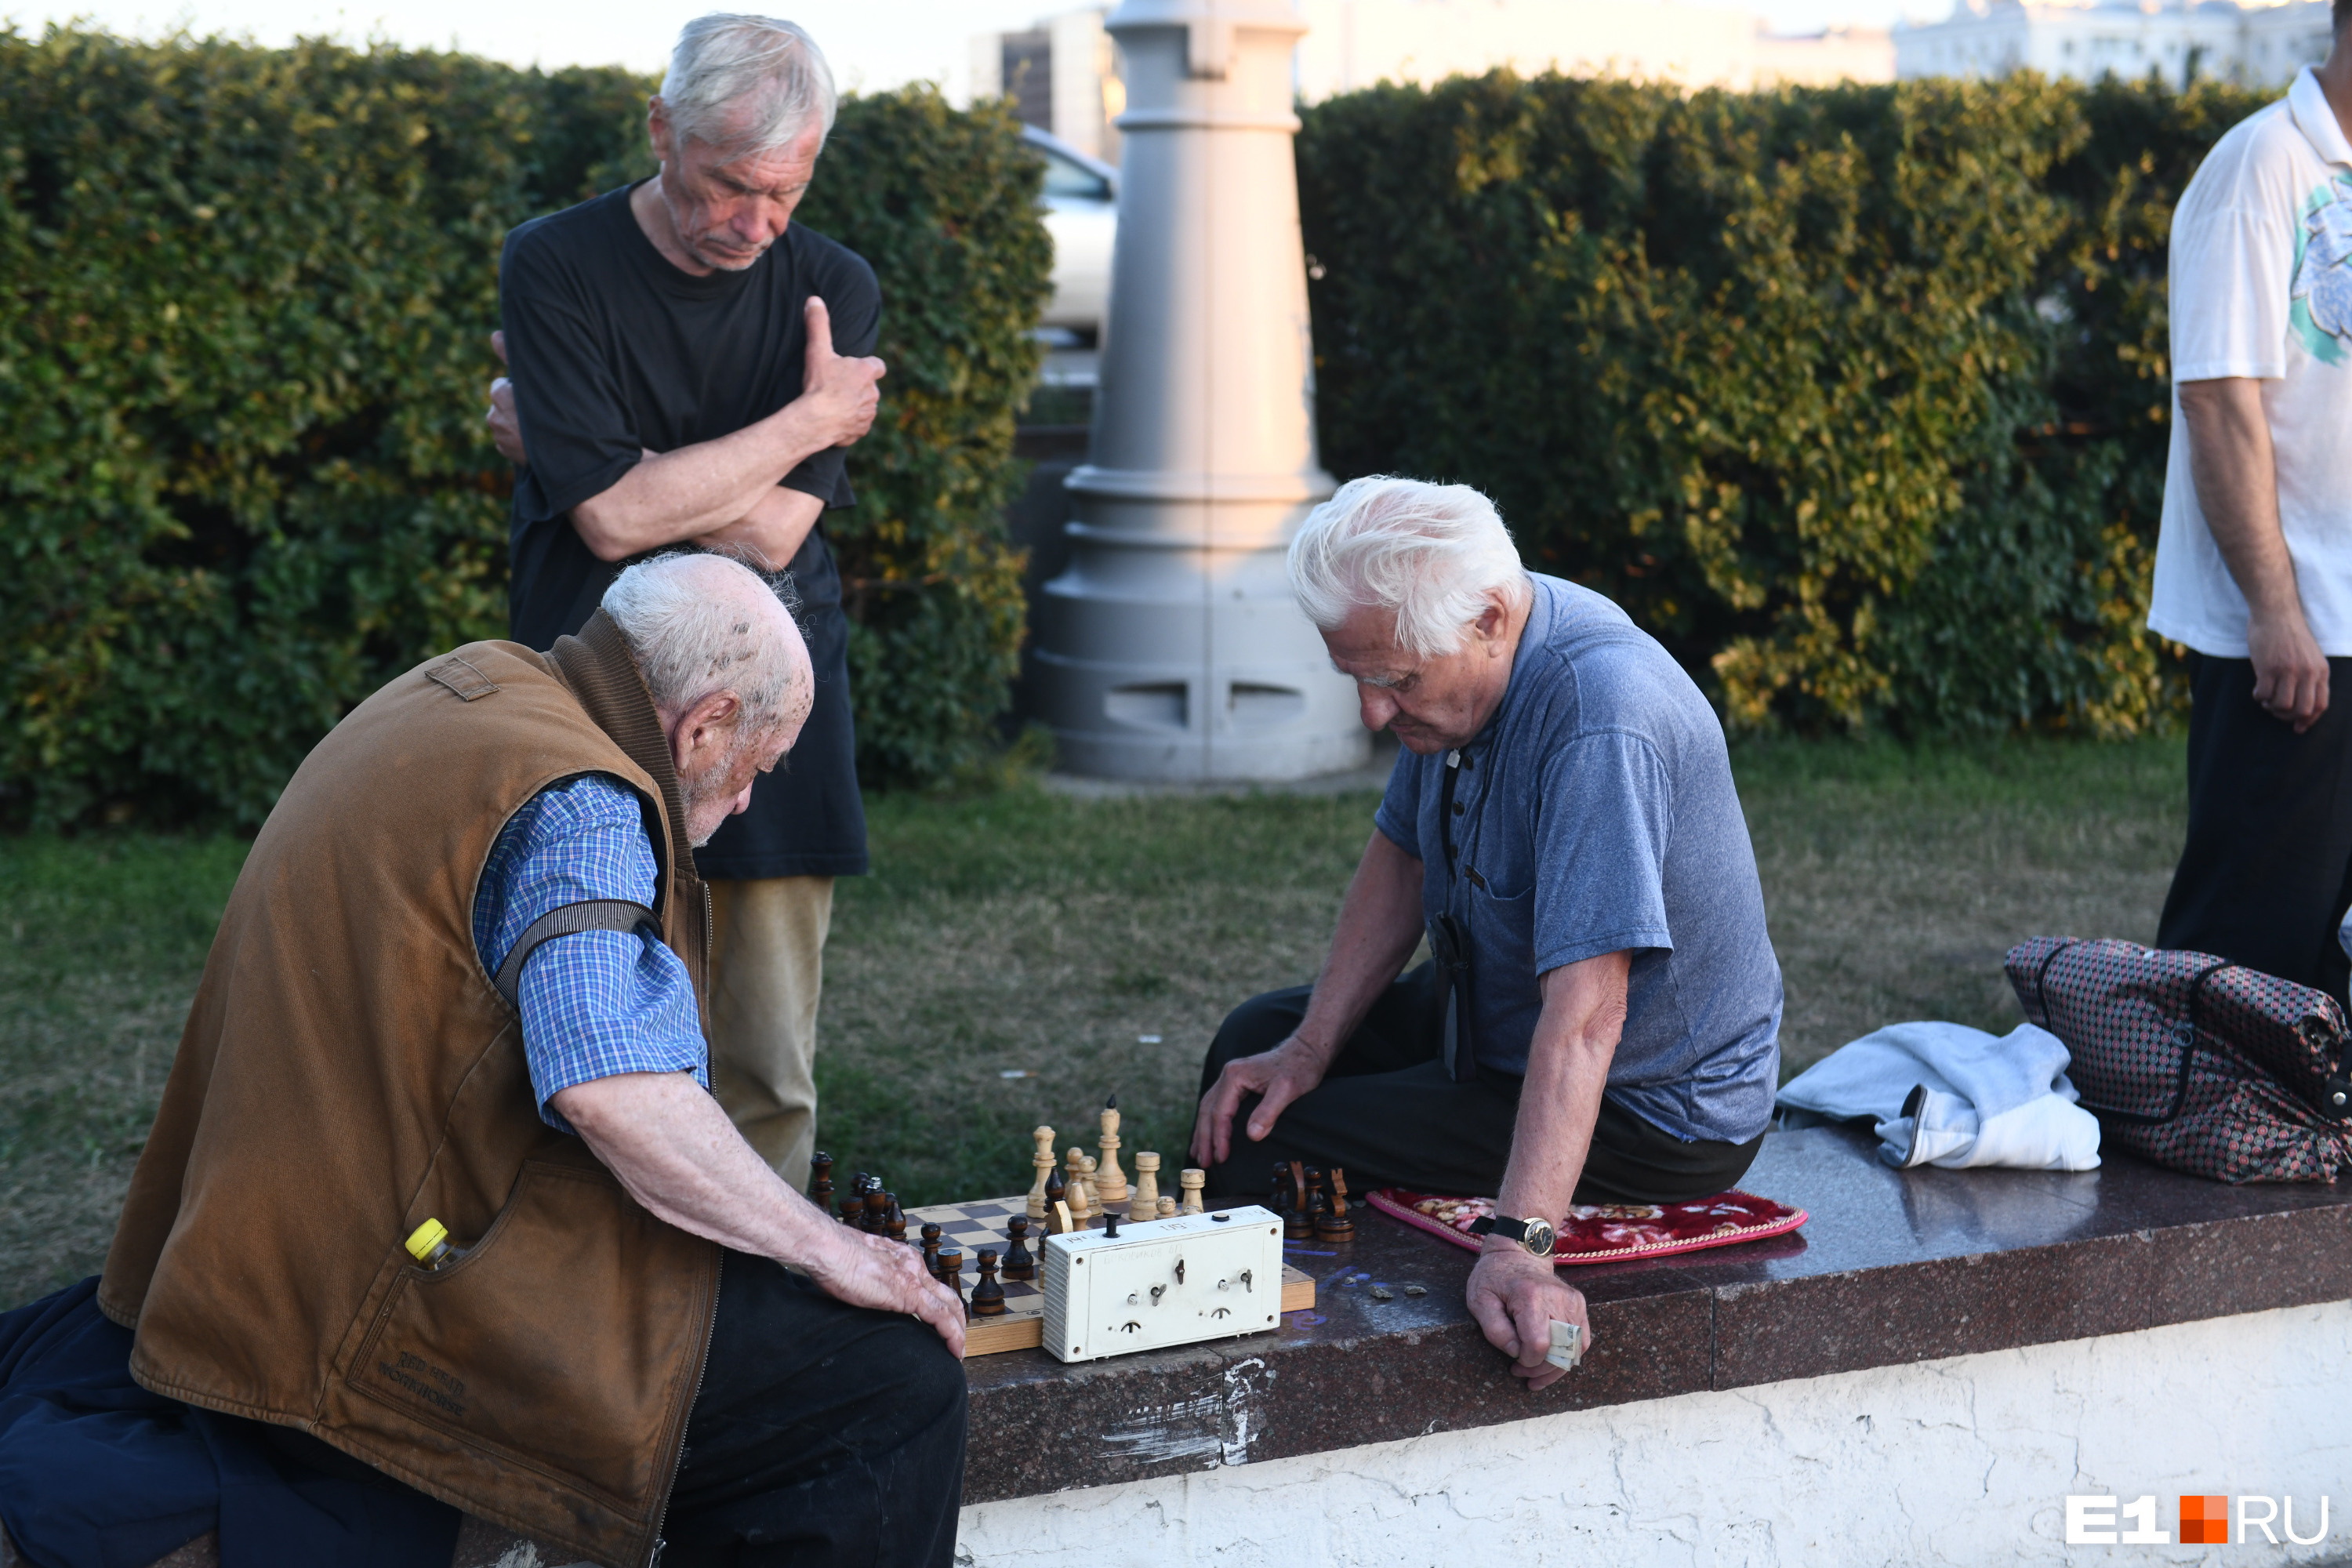 Кое-что на Плотинке вечно — старички, играющие в шахматы